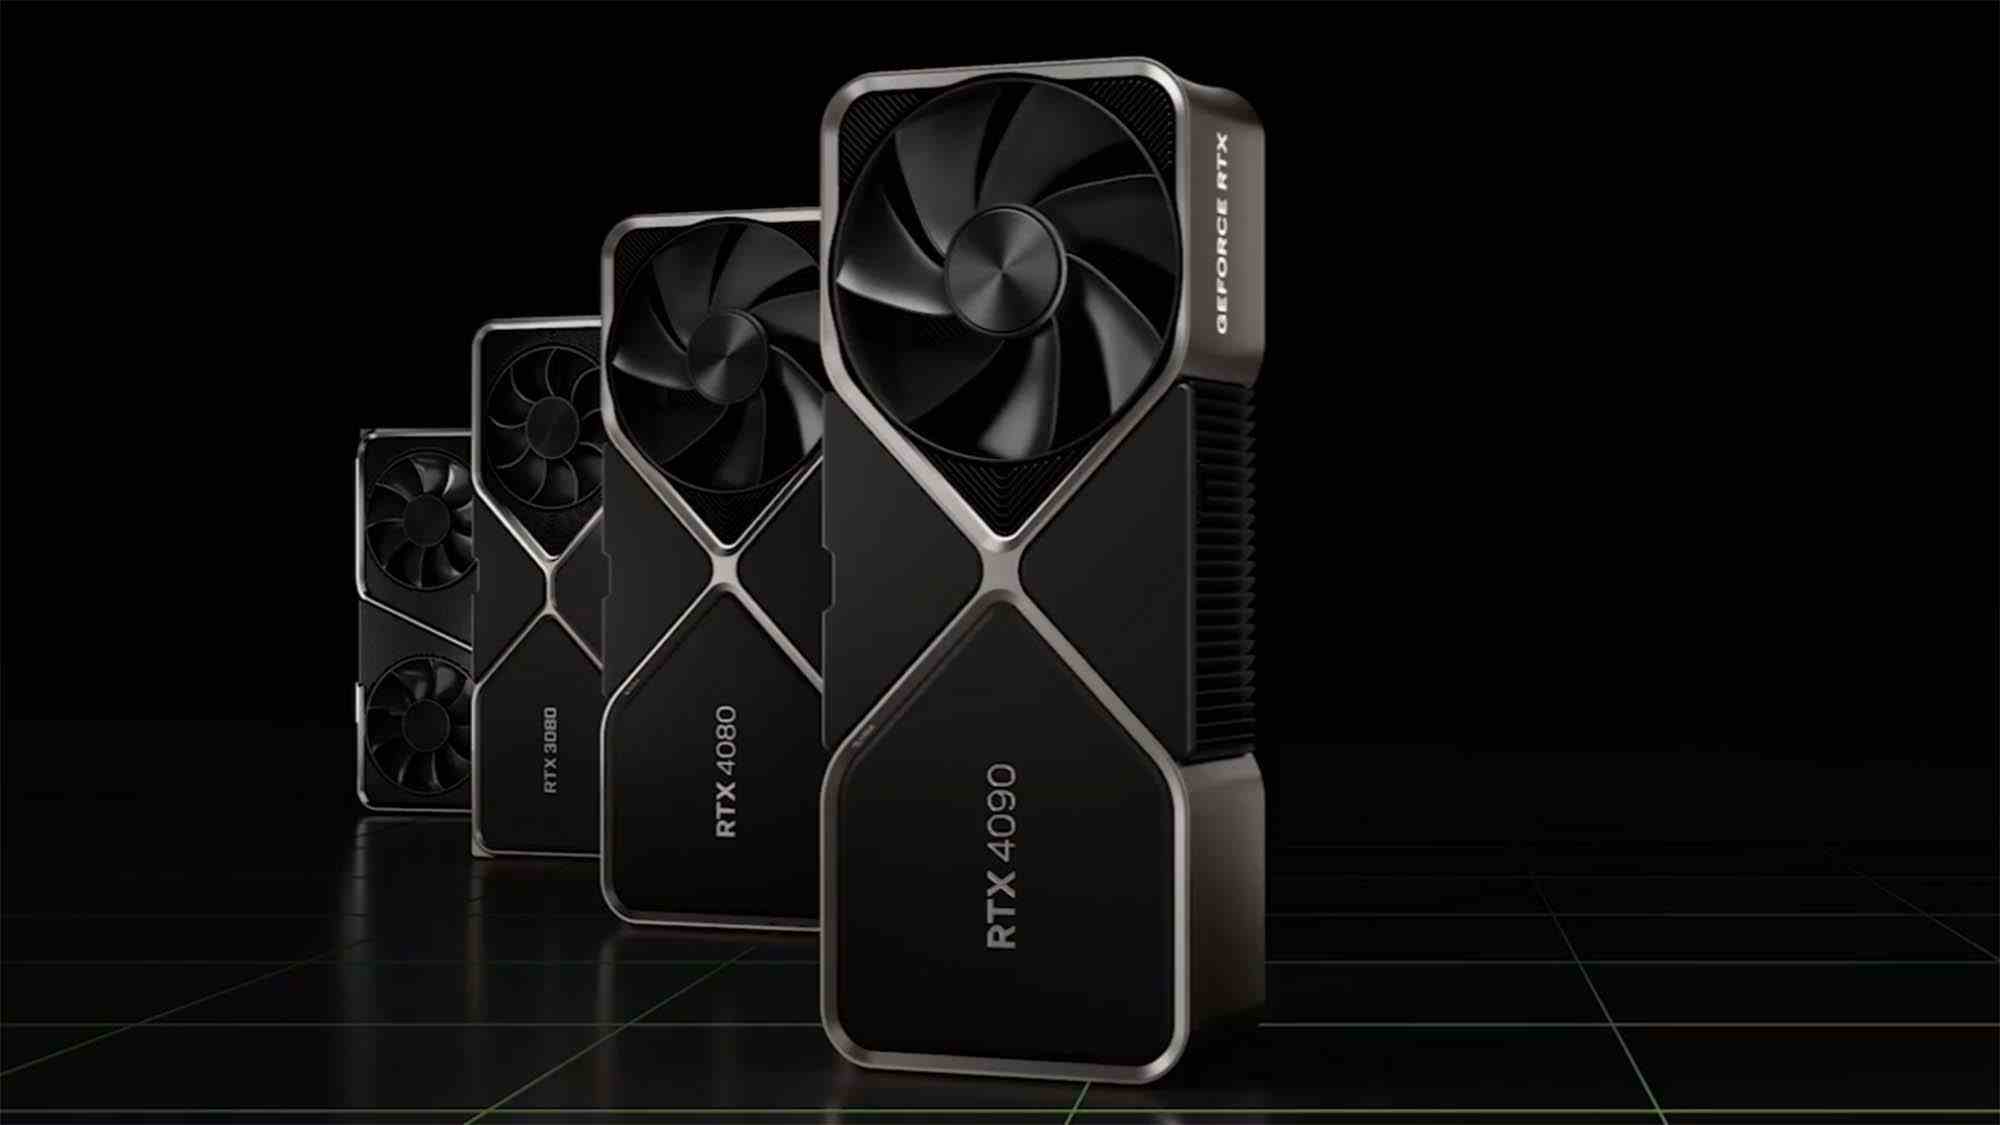 Üst üste dizilmiş Nvidia GeForce RTX kartları